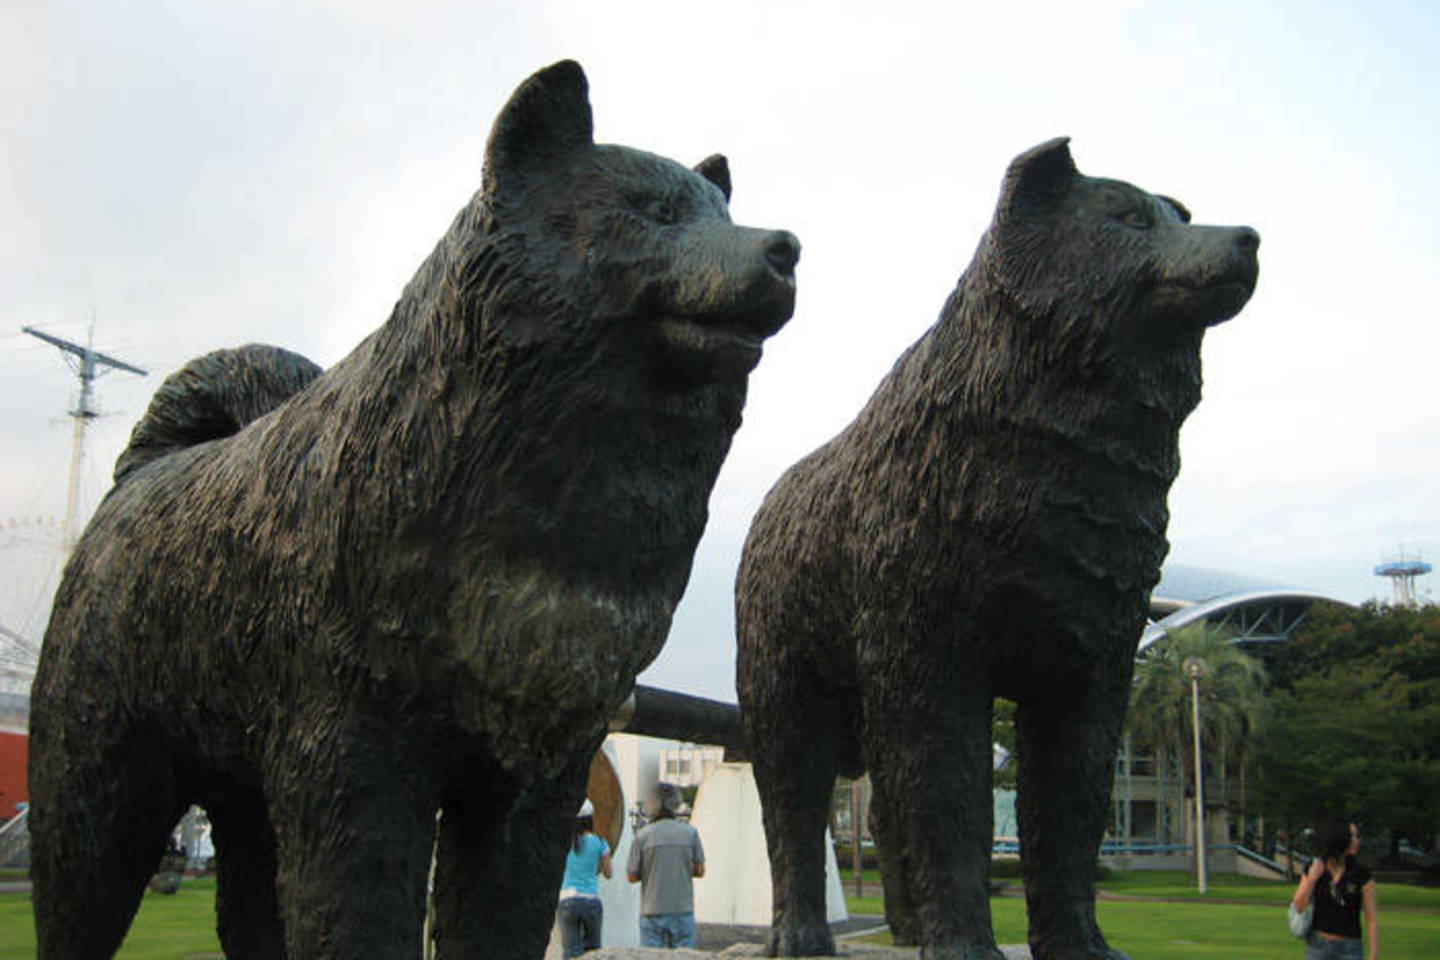  Nuo 1959 m. Tokijuje stovi statulų grupė, mininti 15 Showa stotyje paliktų Sachalino haskių. Taro ir Jiro turi savo pašto ženklus, jiems bei garsiajai ekspedicijai paminėti išleista proginė moneta.<br> Flickr.com, Wikipedia nuotr.